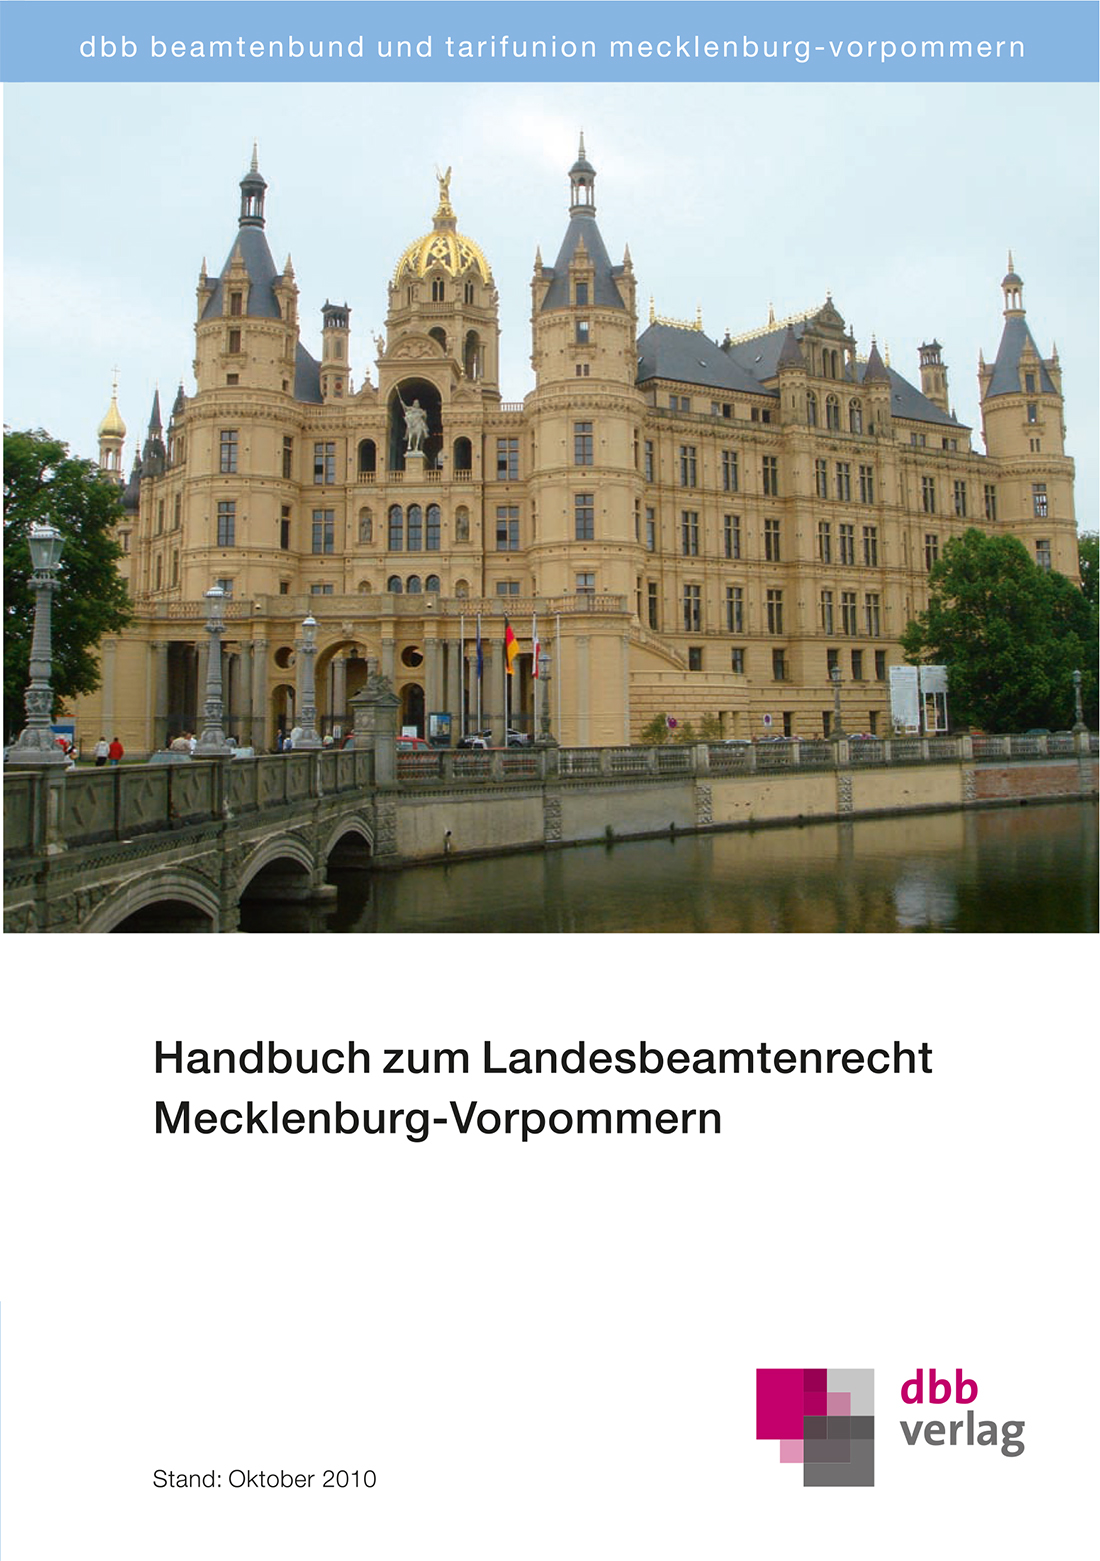 Handbuch zum Landesbeamtenrecht Mecklenburg-Vorpommern © DBB Verlag